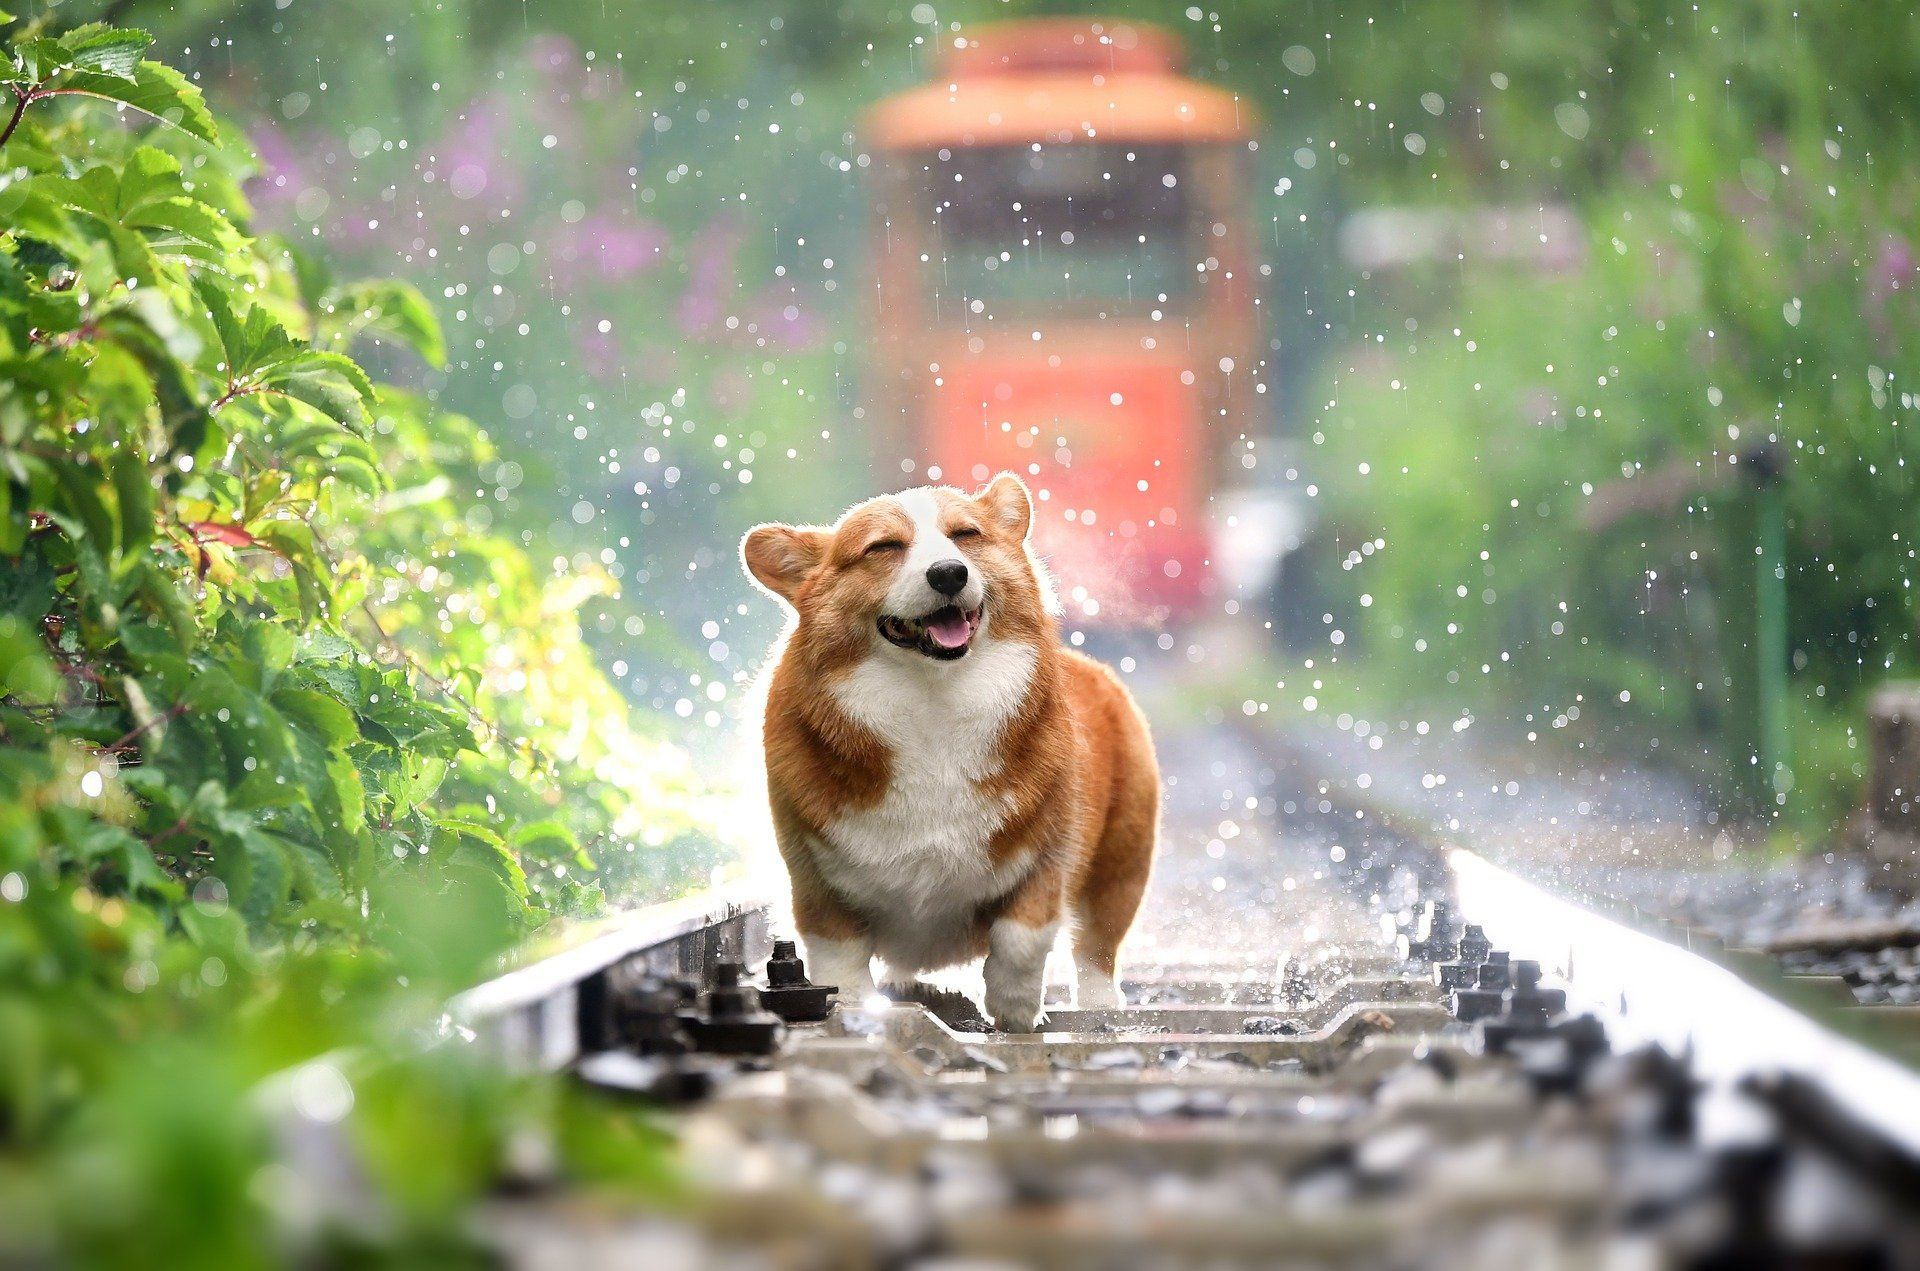 Dog enjoying rain